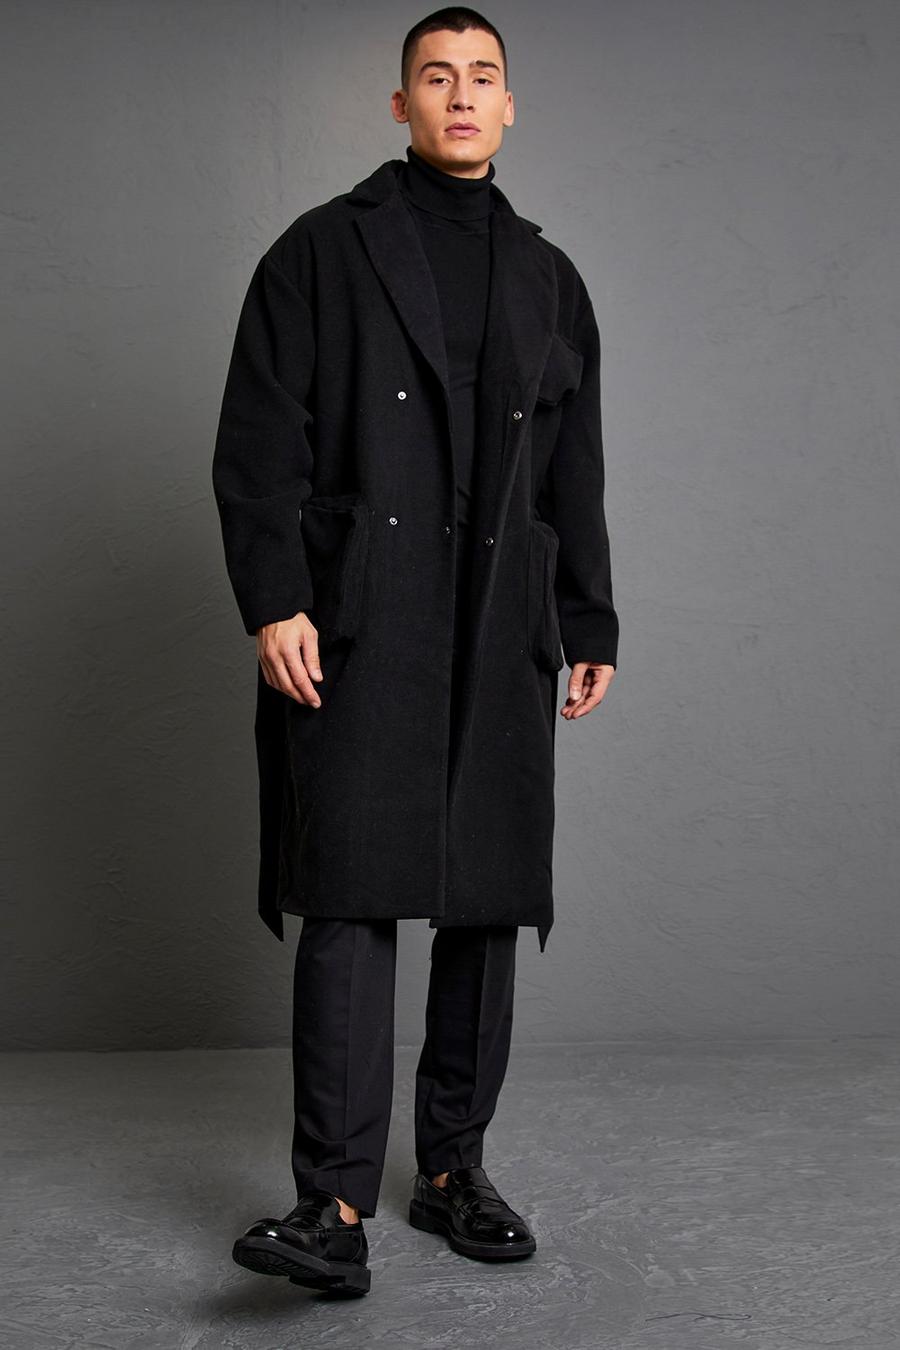 שחור negro מעיל עליון בסגנון שימושי עם 3 כיסים וחגורה